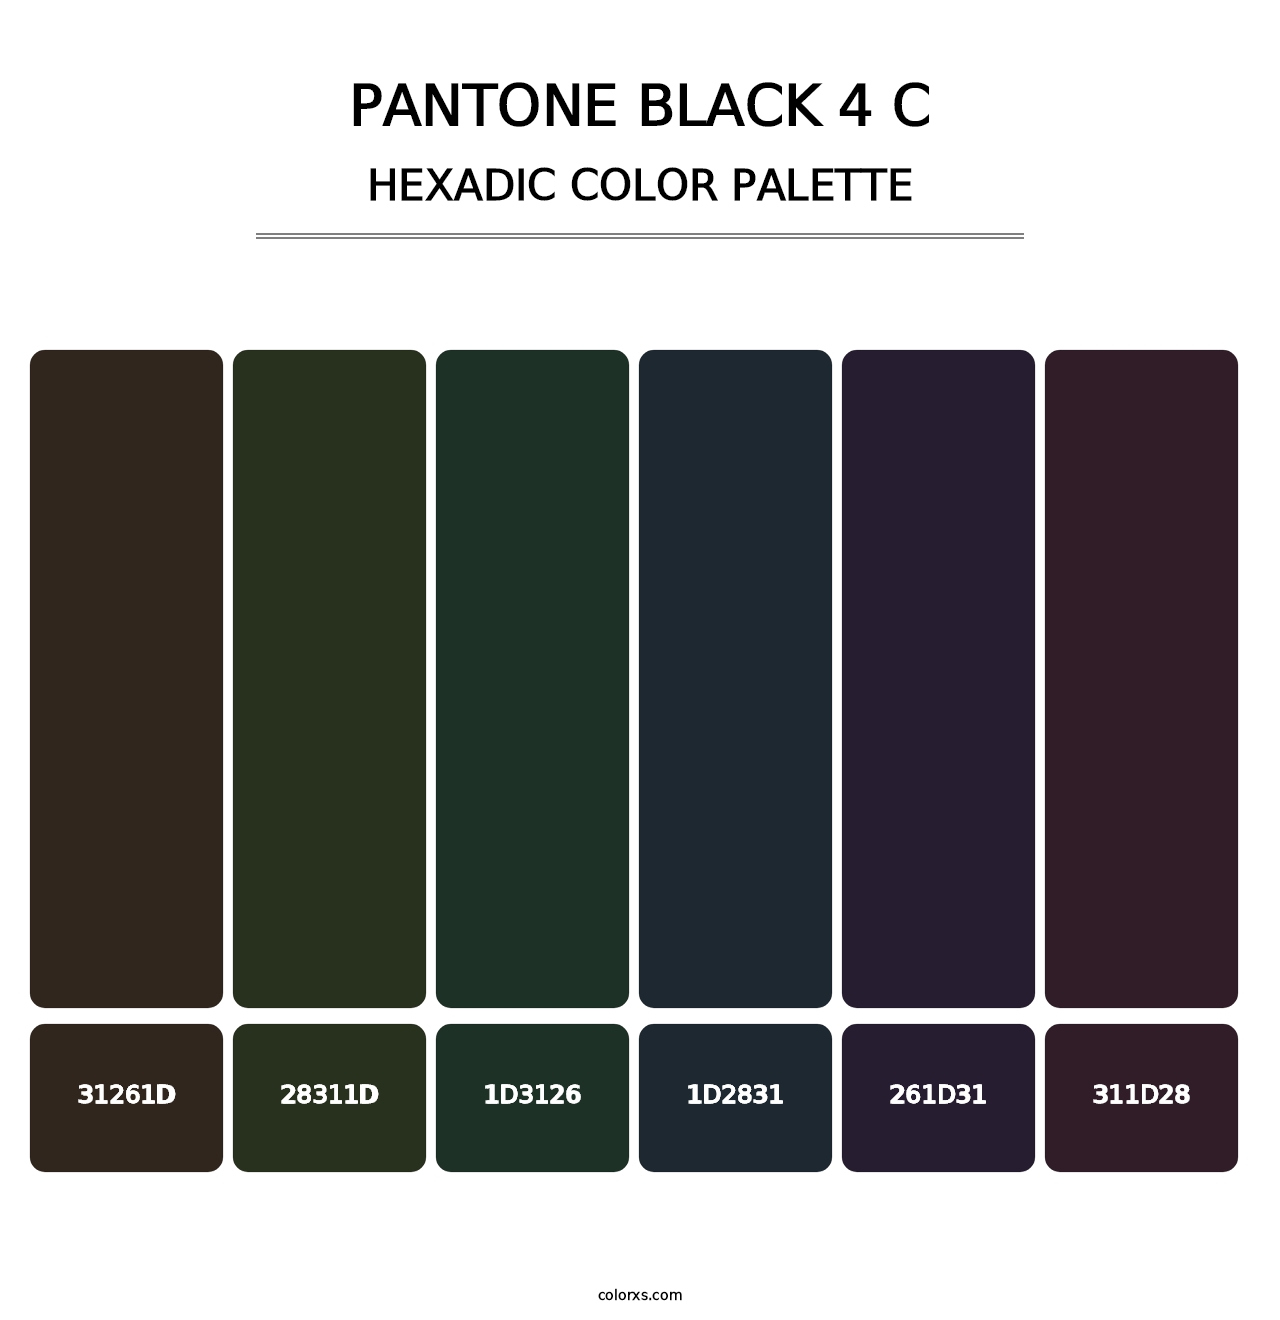 PANTONE Black 4 C - Hexadic Color Palette